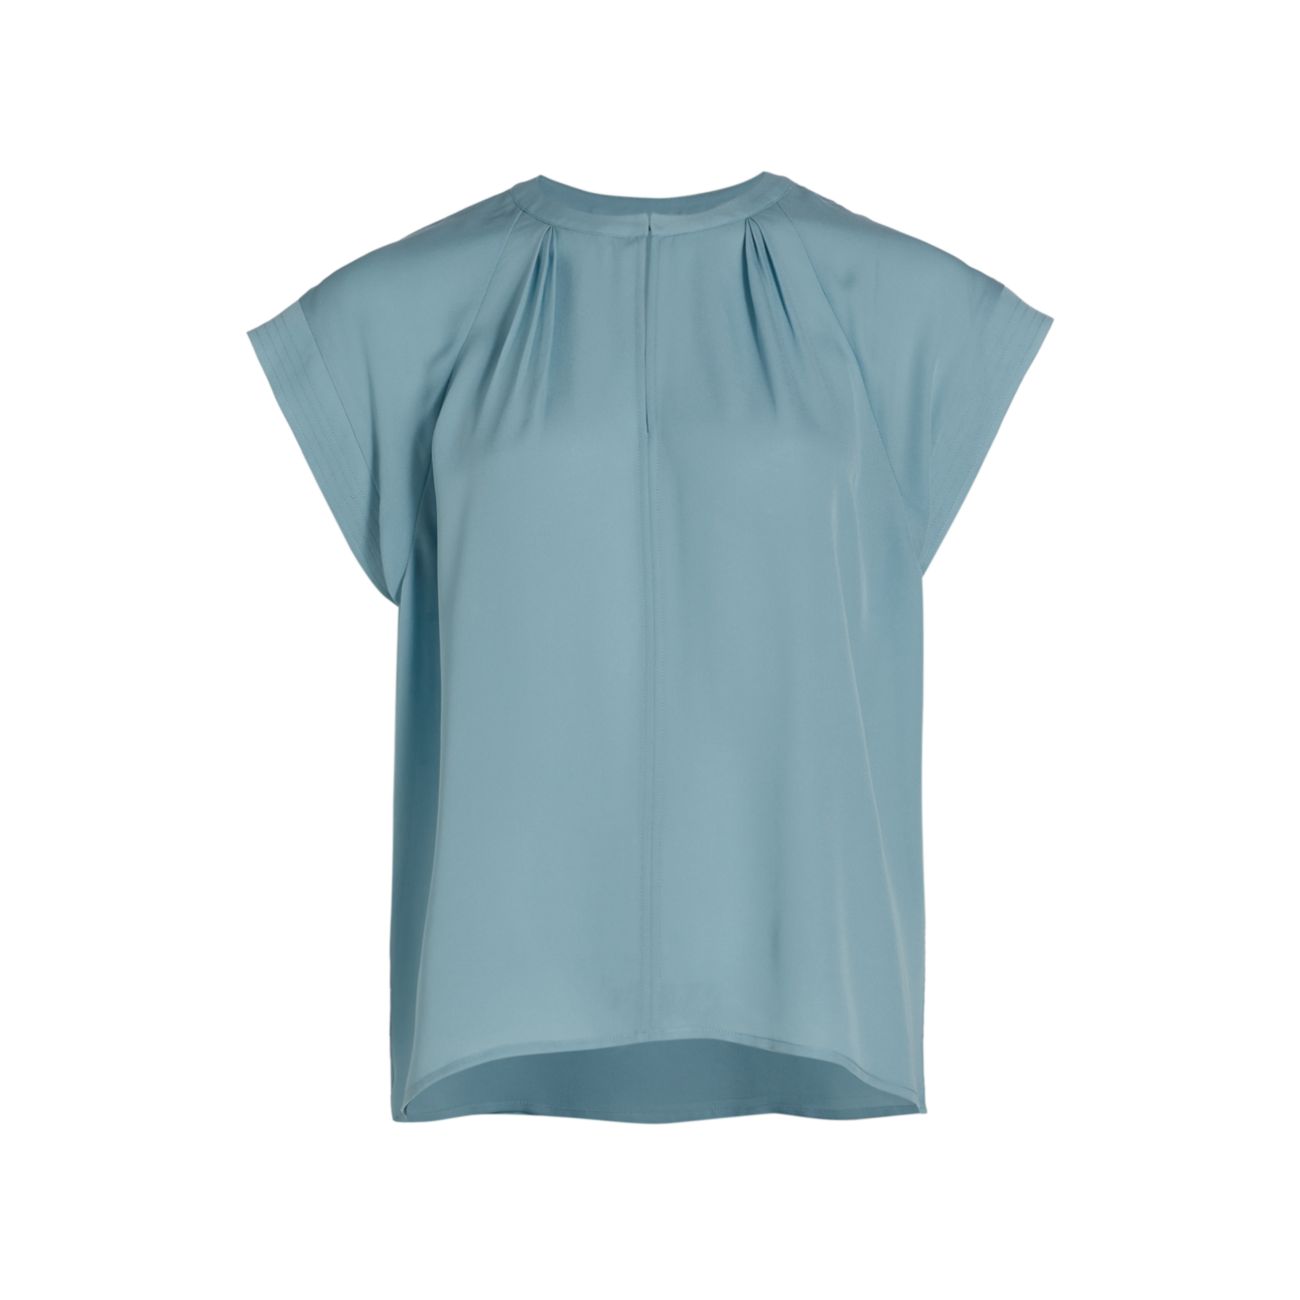 Плиссированная шелковая блуза с короткими рукавами Elie Tahari